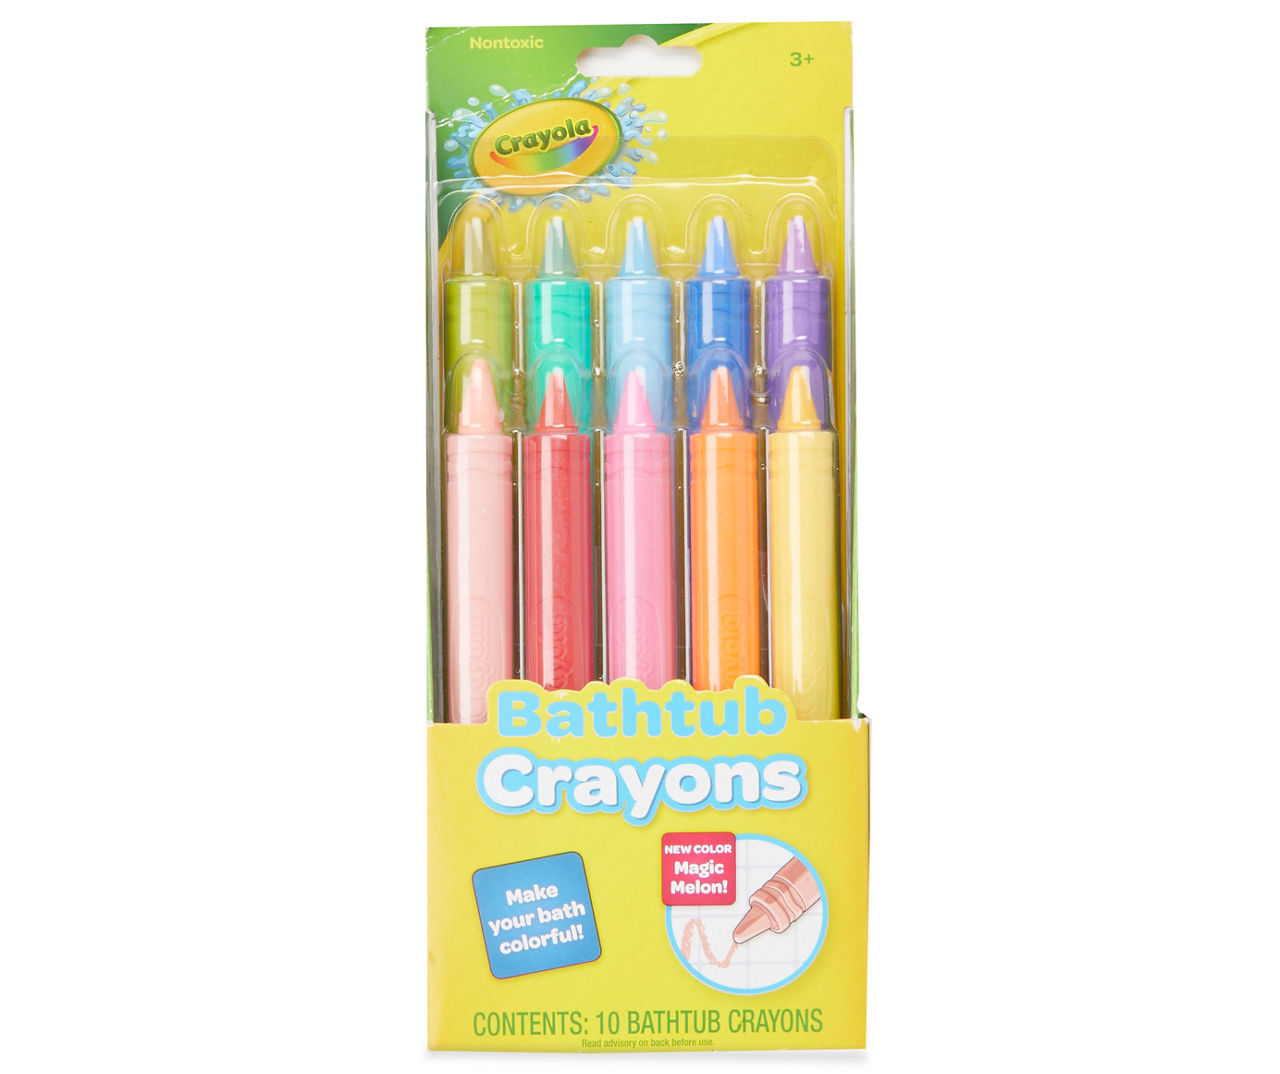 Bath Crayons in Crayons 